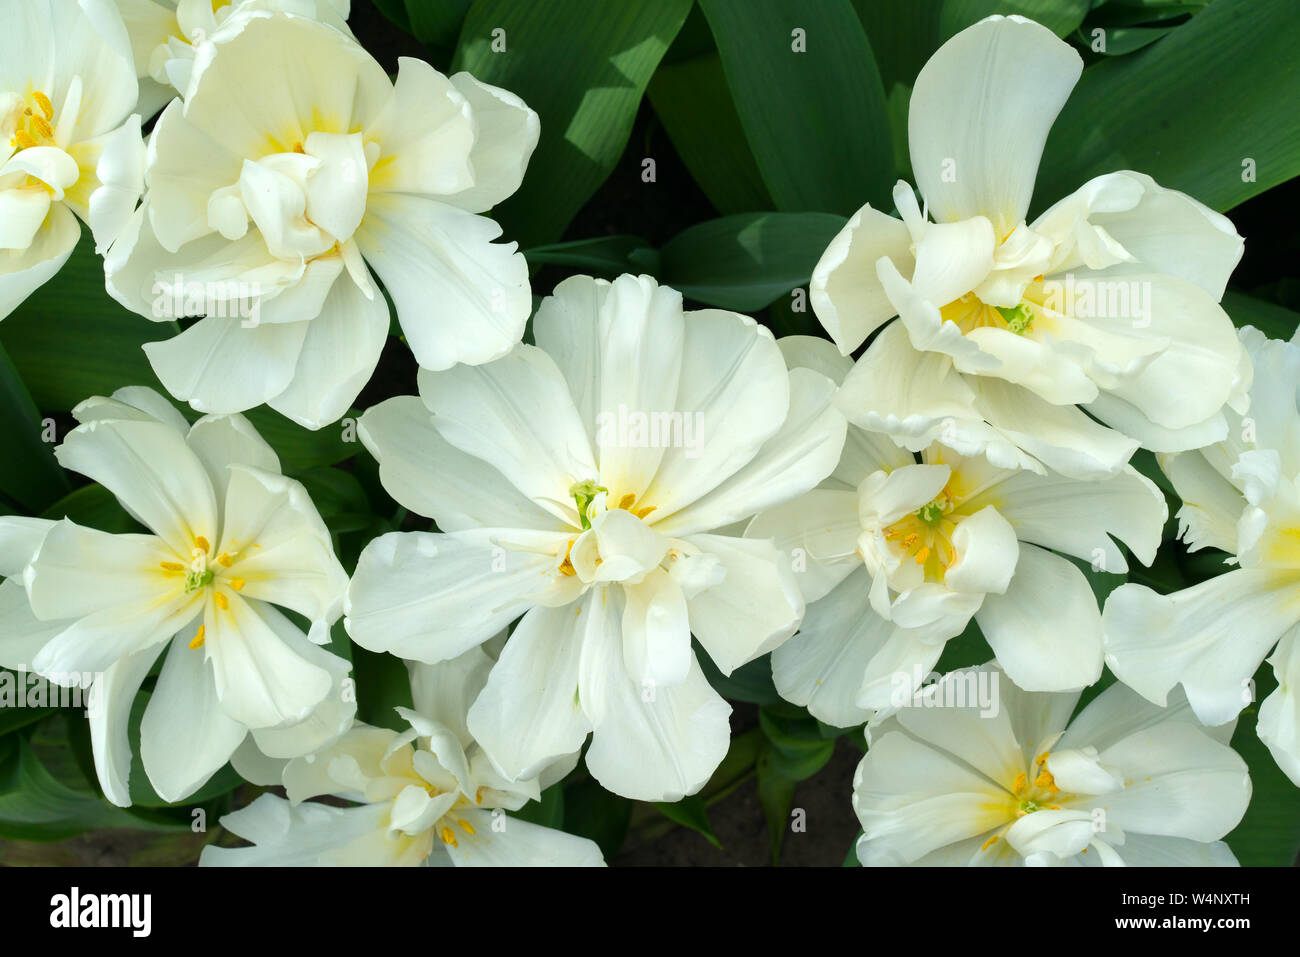 Weiße Blumen Tulpen mit gelben Zentren und gelben Staubgefäßen geöffnet Stockfoto